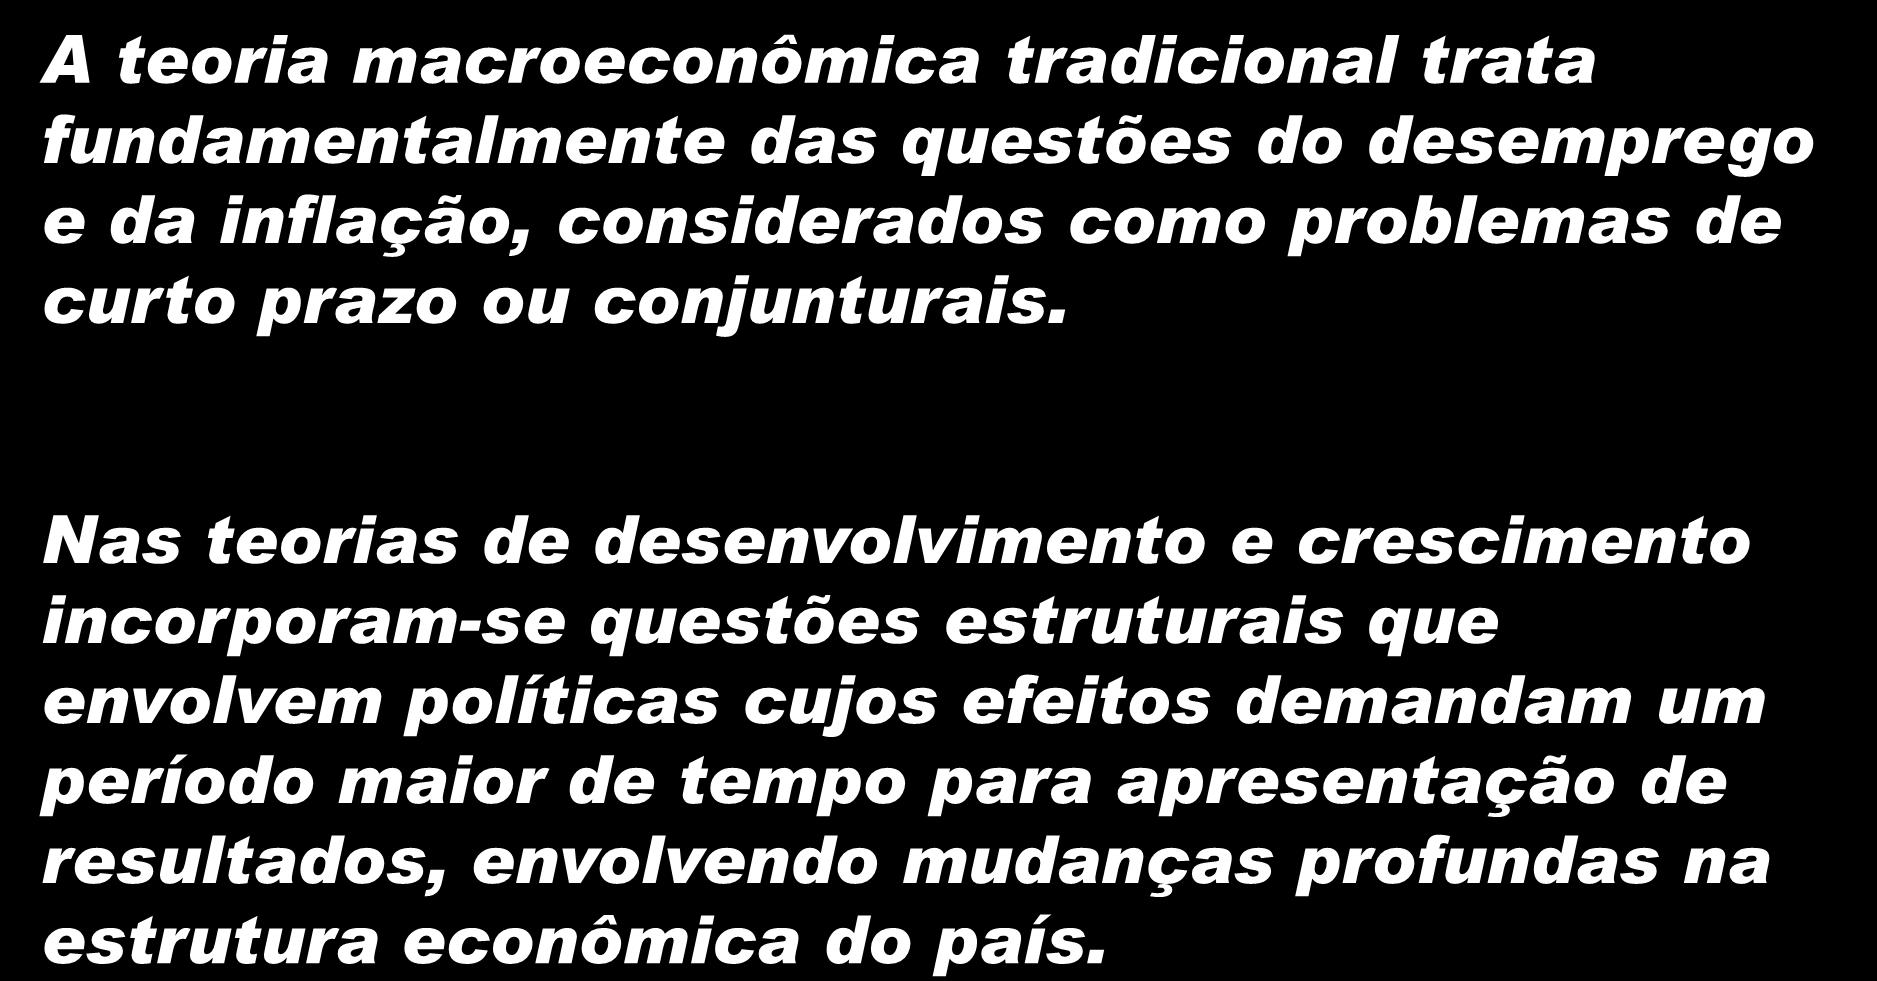 Macroeconomia x Teoria do Desenvolvimento e Crescimento Econômico A teoria macroeconômica tradicional trata fundamentalmente das questões do desemprego e da inflação, considerados como problemas de